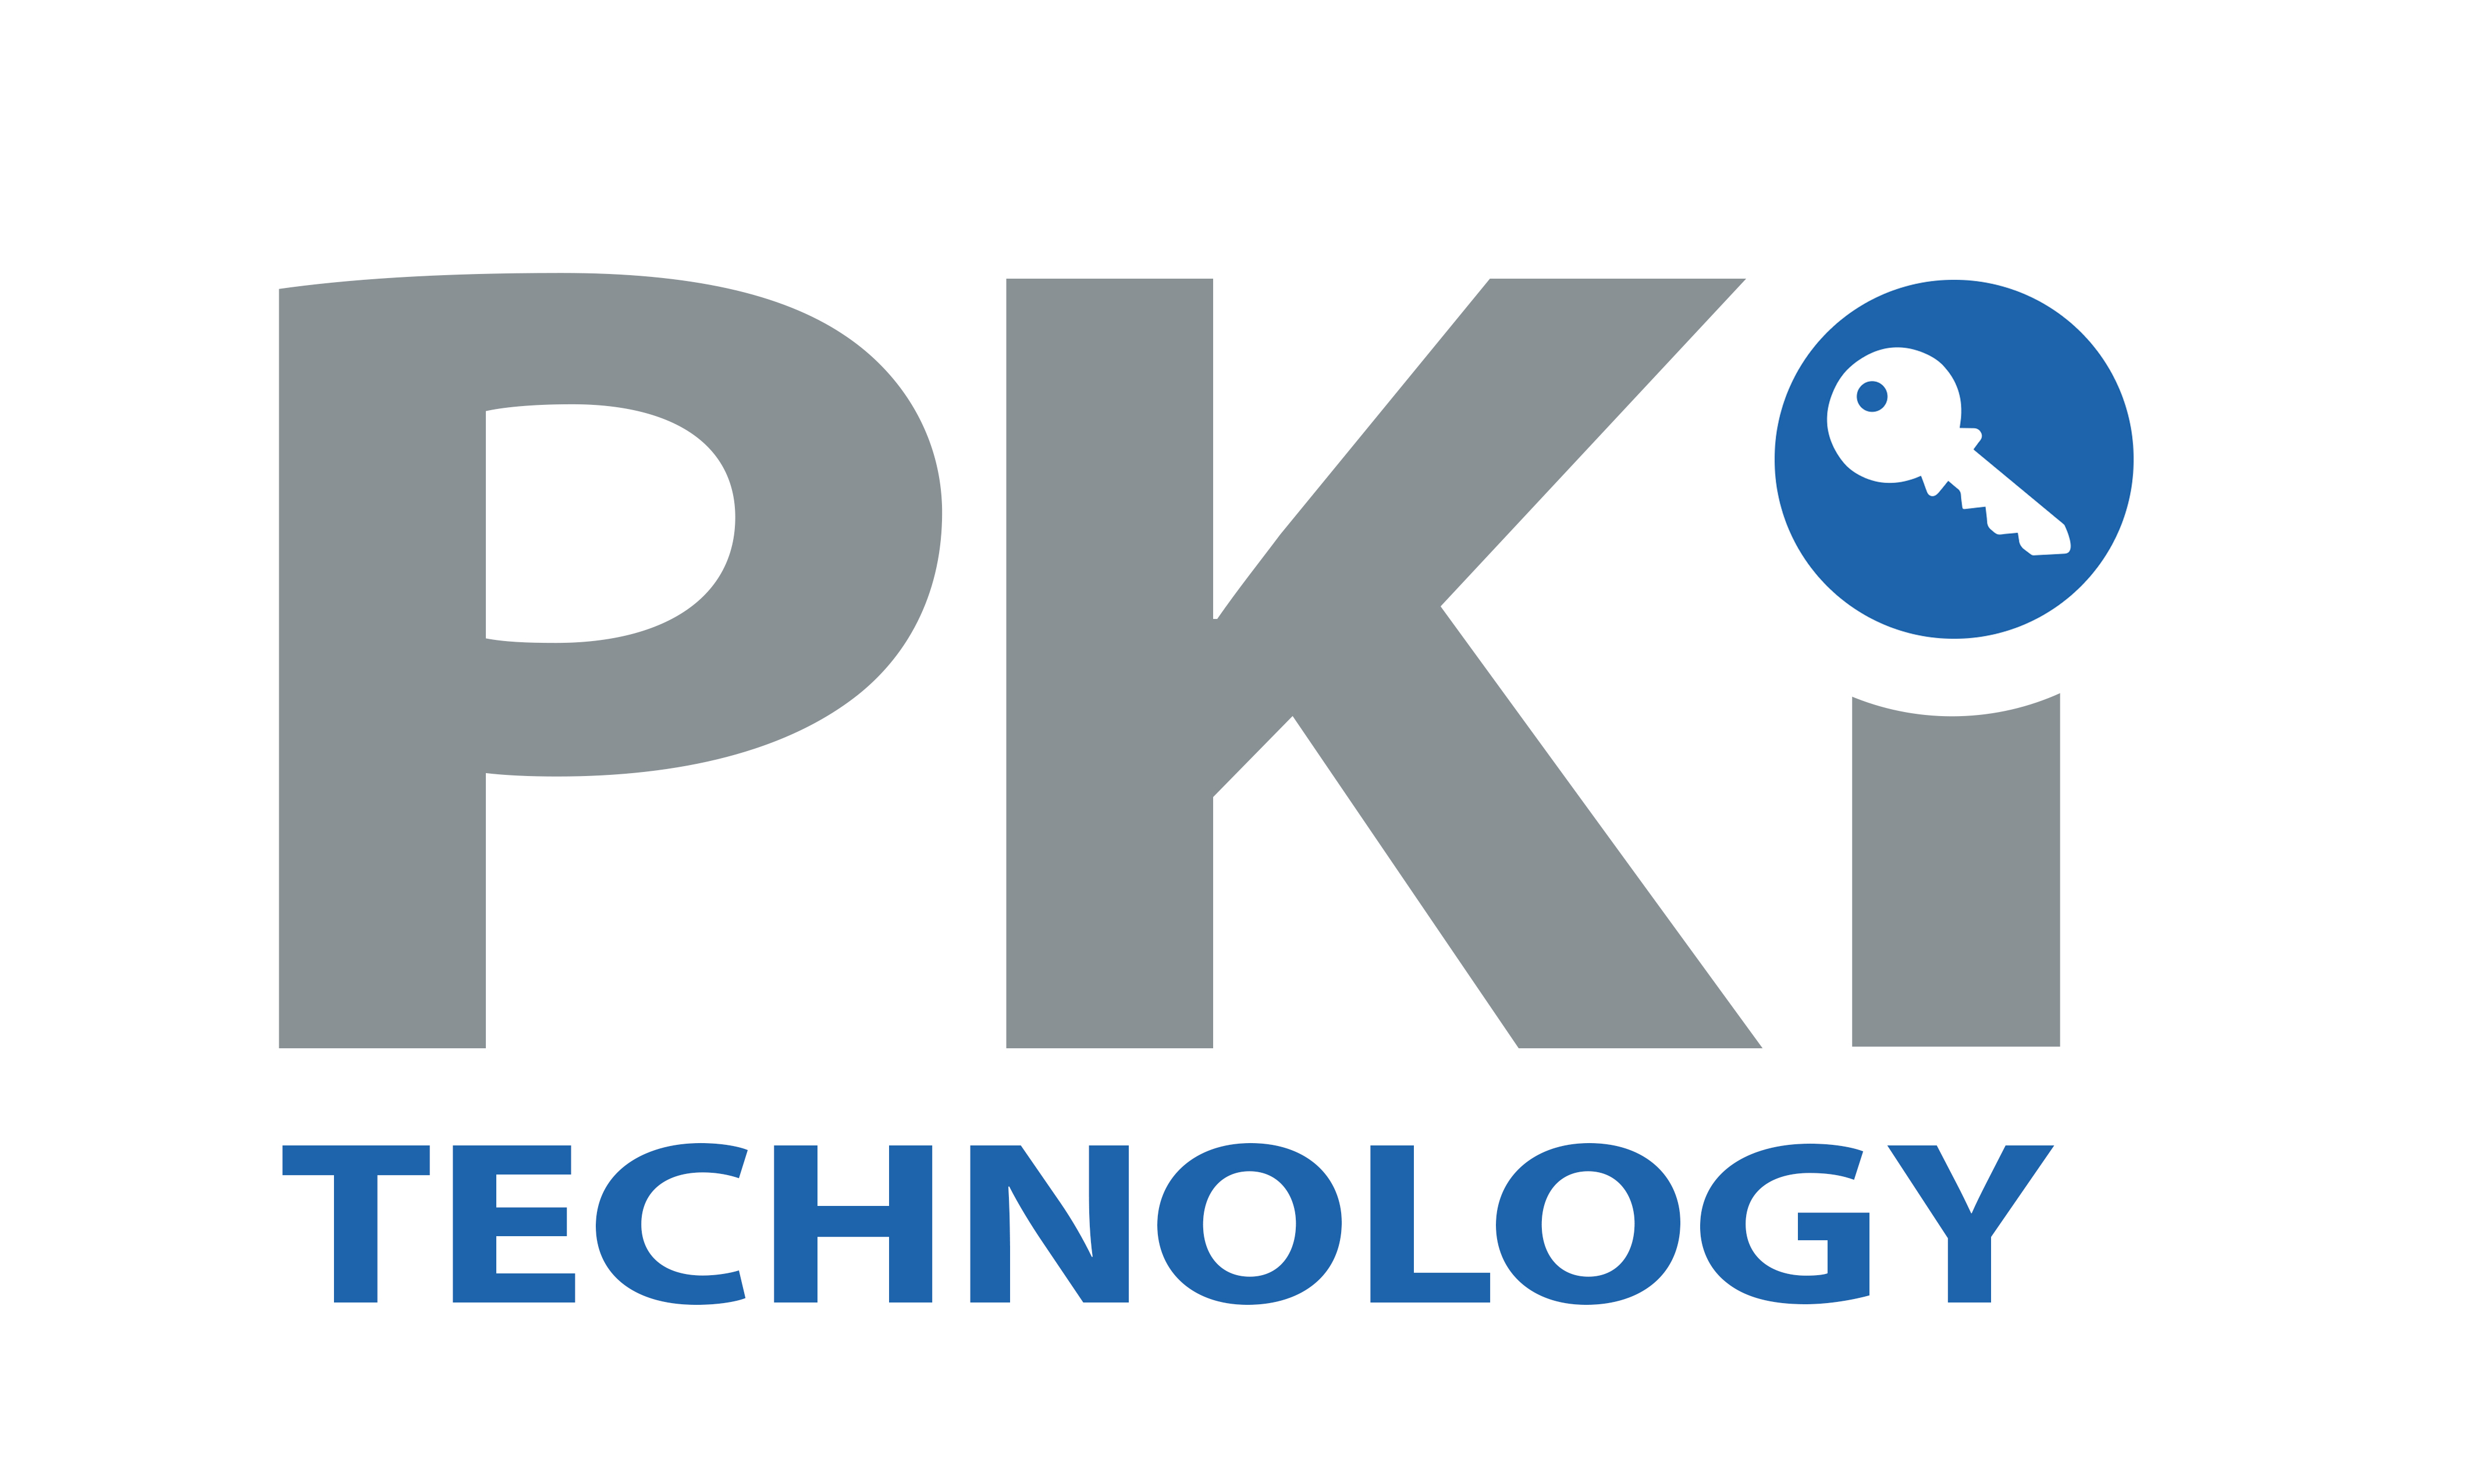 pki technology